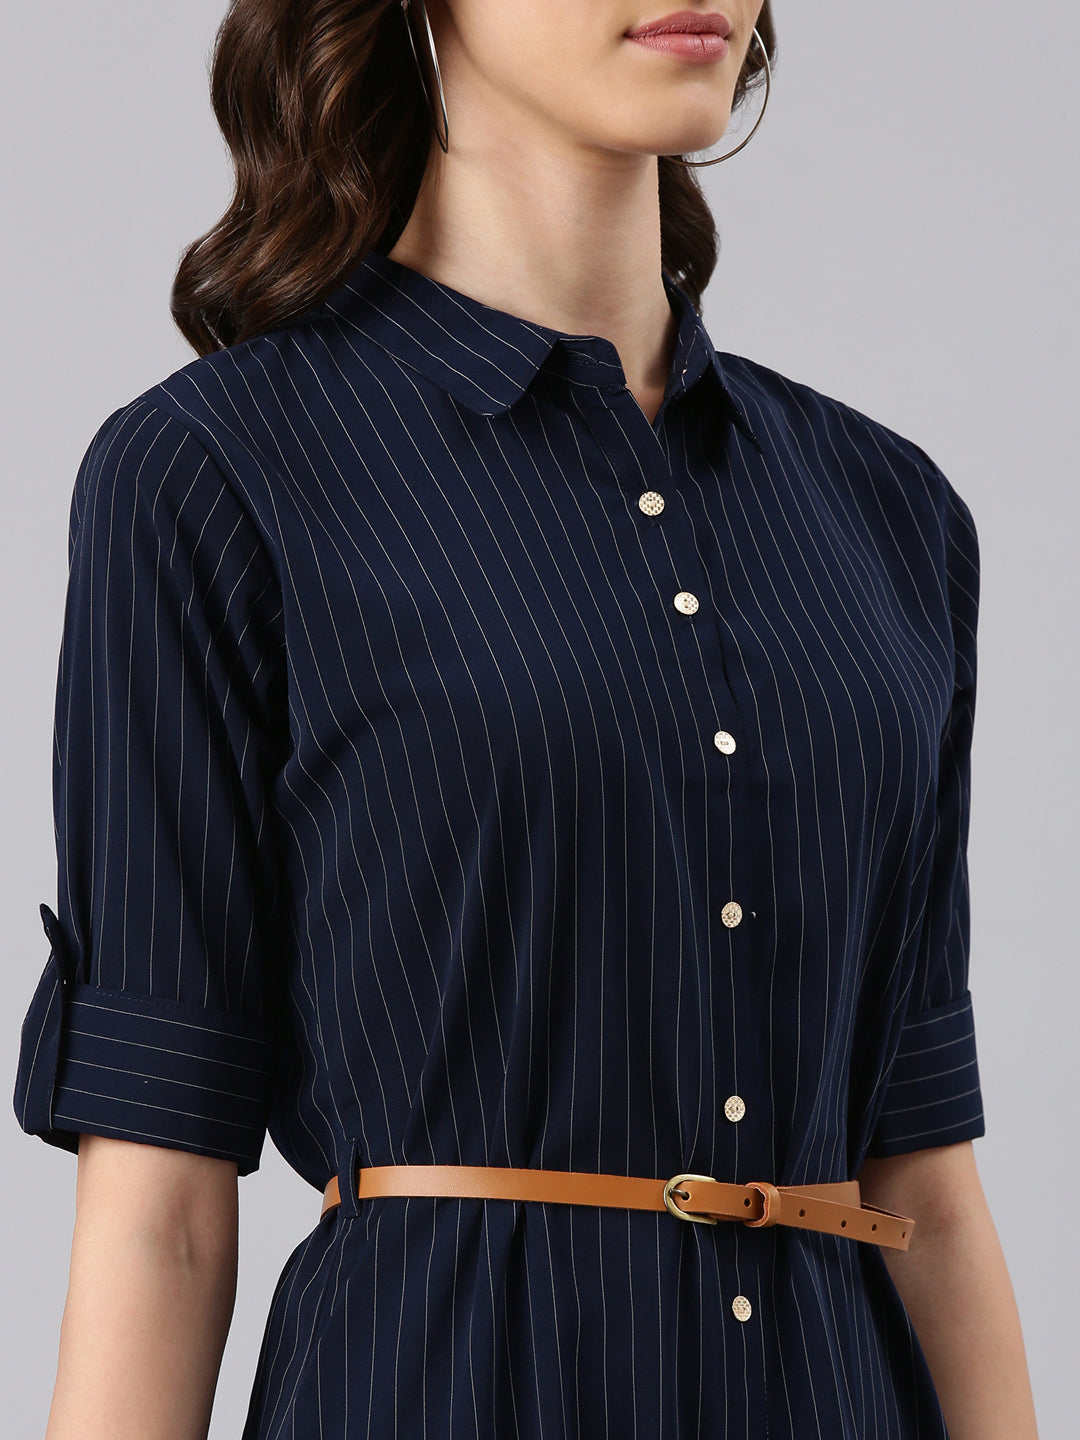 Women Navy Blue Striped Shirt Dress